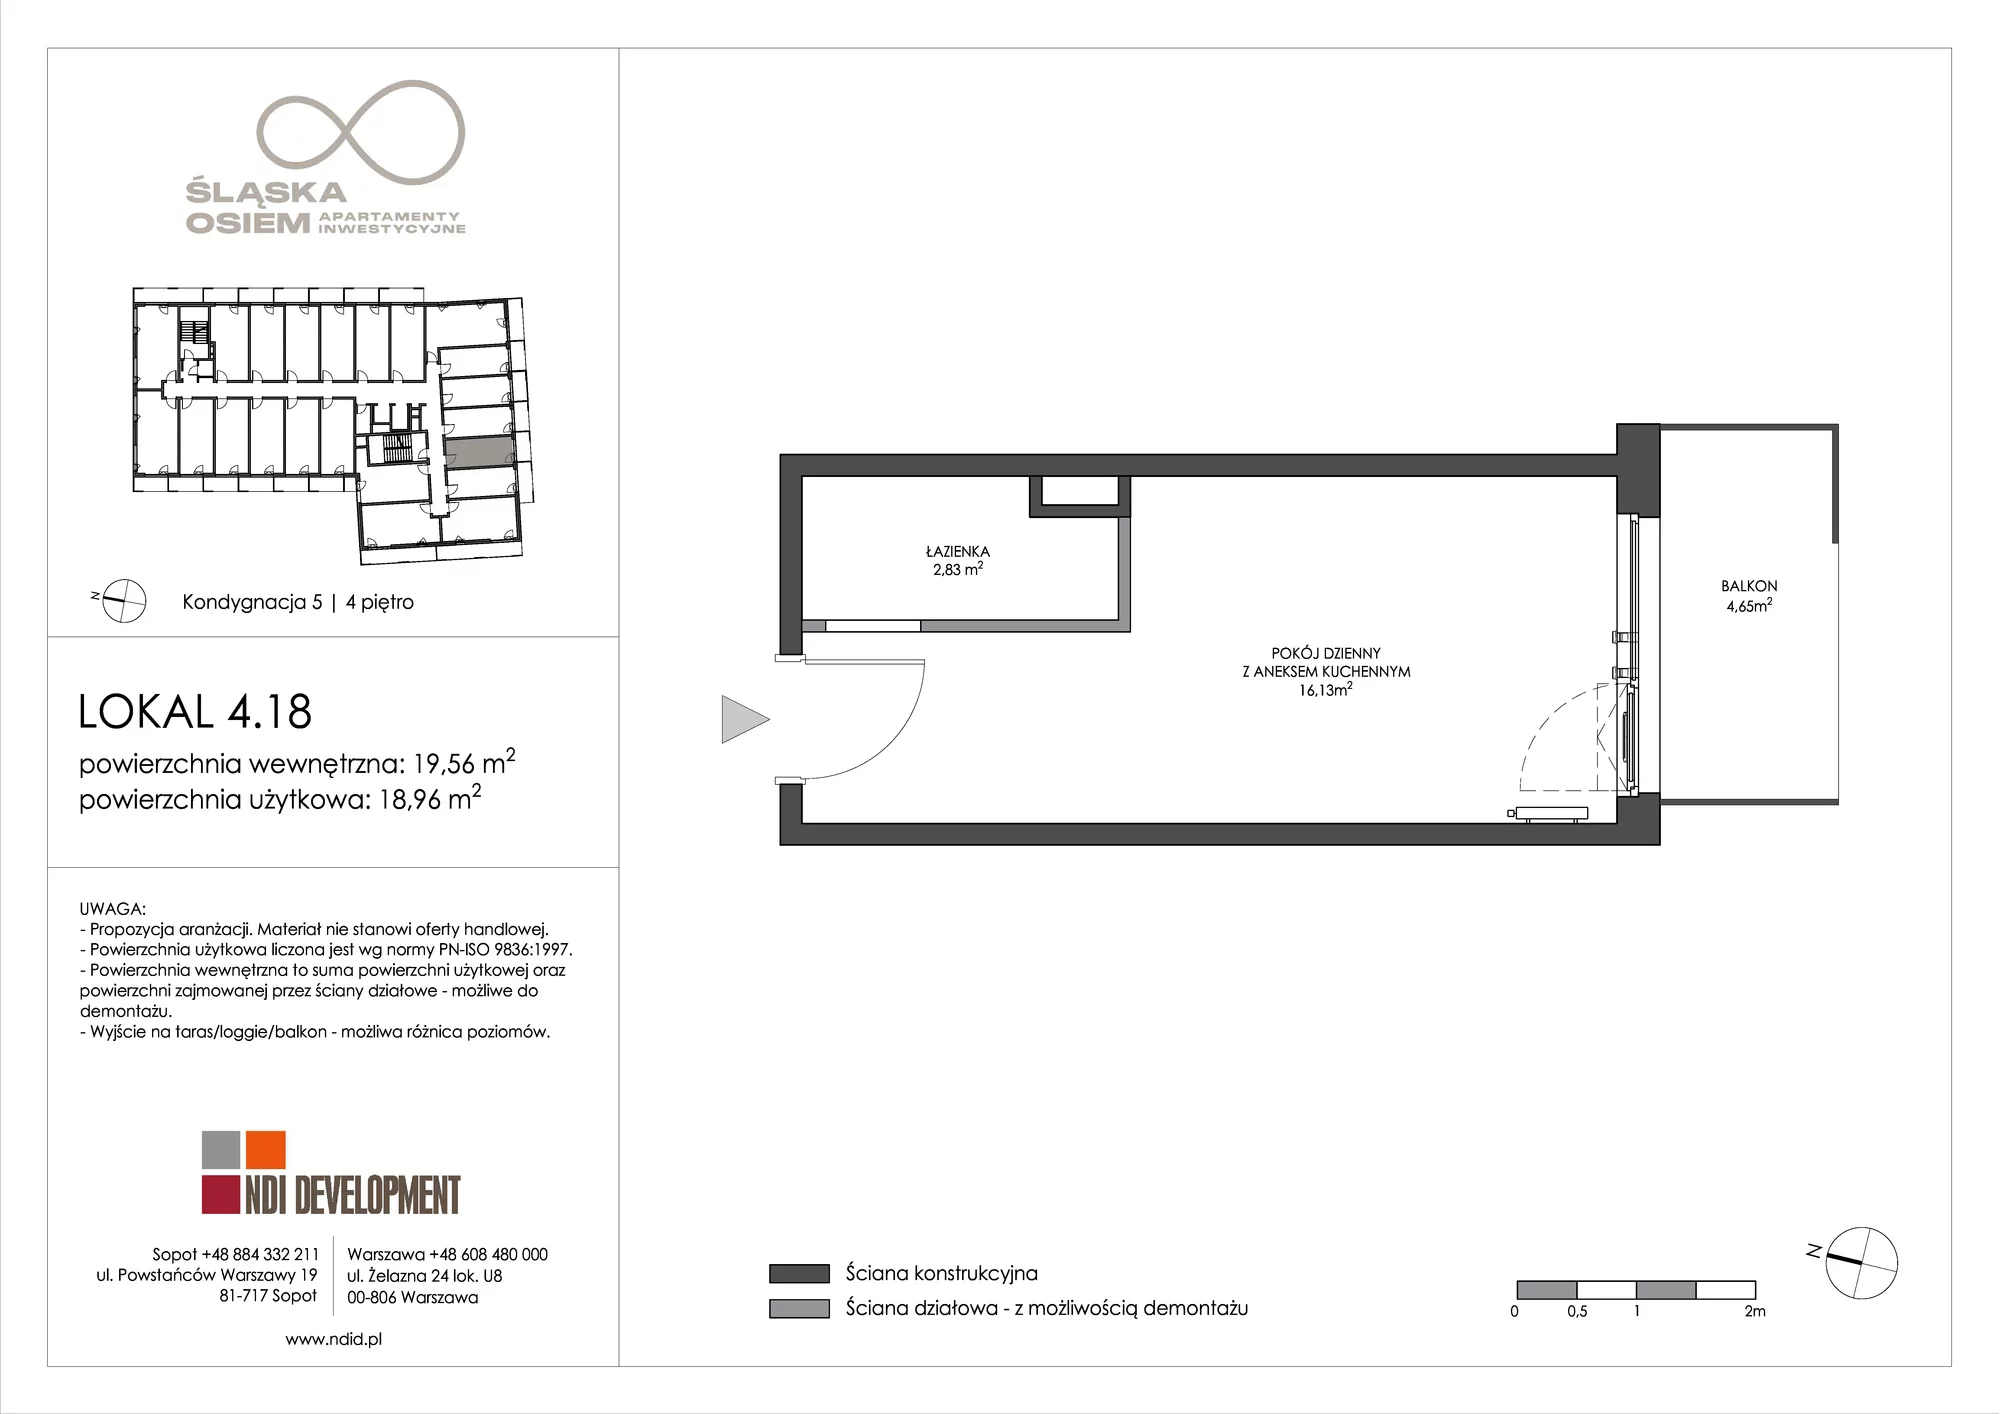 Apartament inwestycyjny 19,56 m², piętro 4, oferta nr 4.18, Śląska Osiem, Gdańsk, Przymorze, ul. Śląska 8